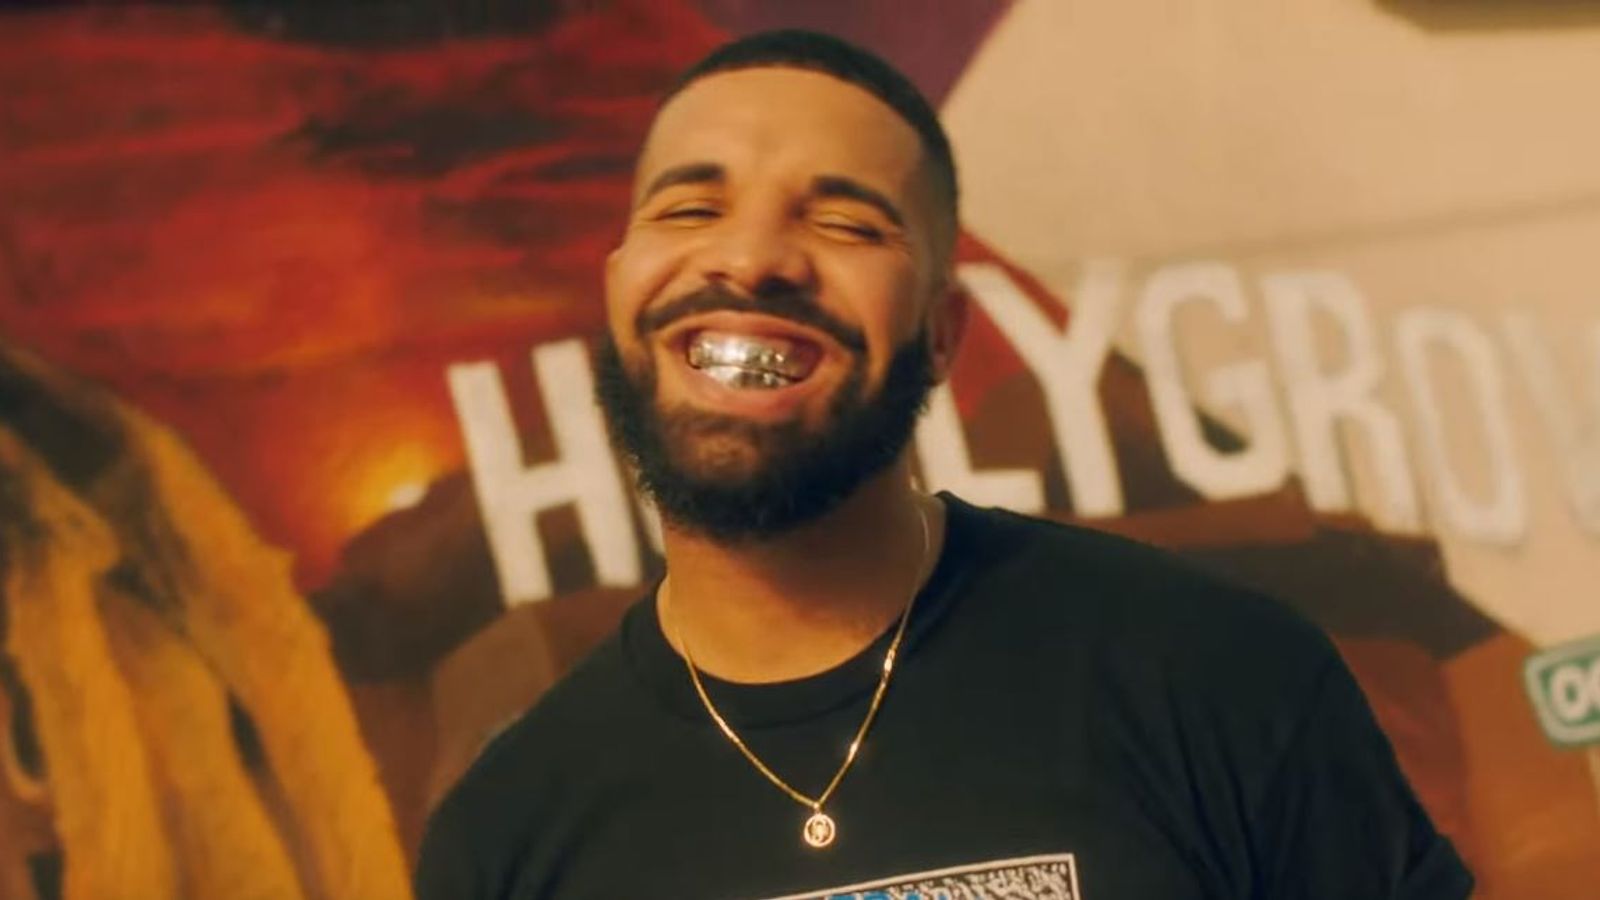 Drake wore Boogie jersey in 'In My Feelings' video